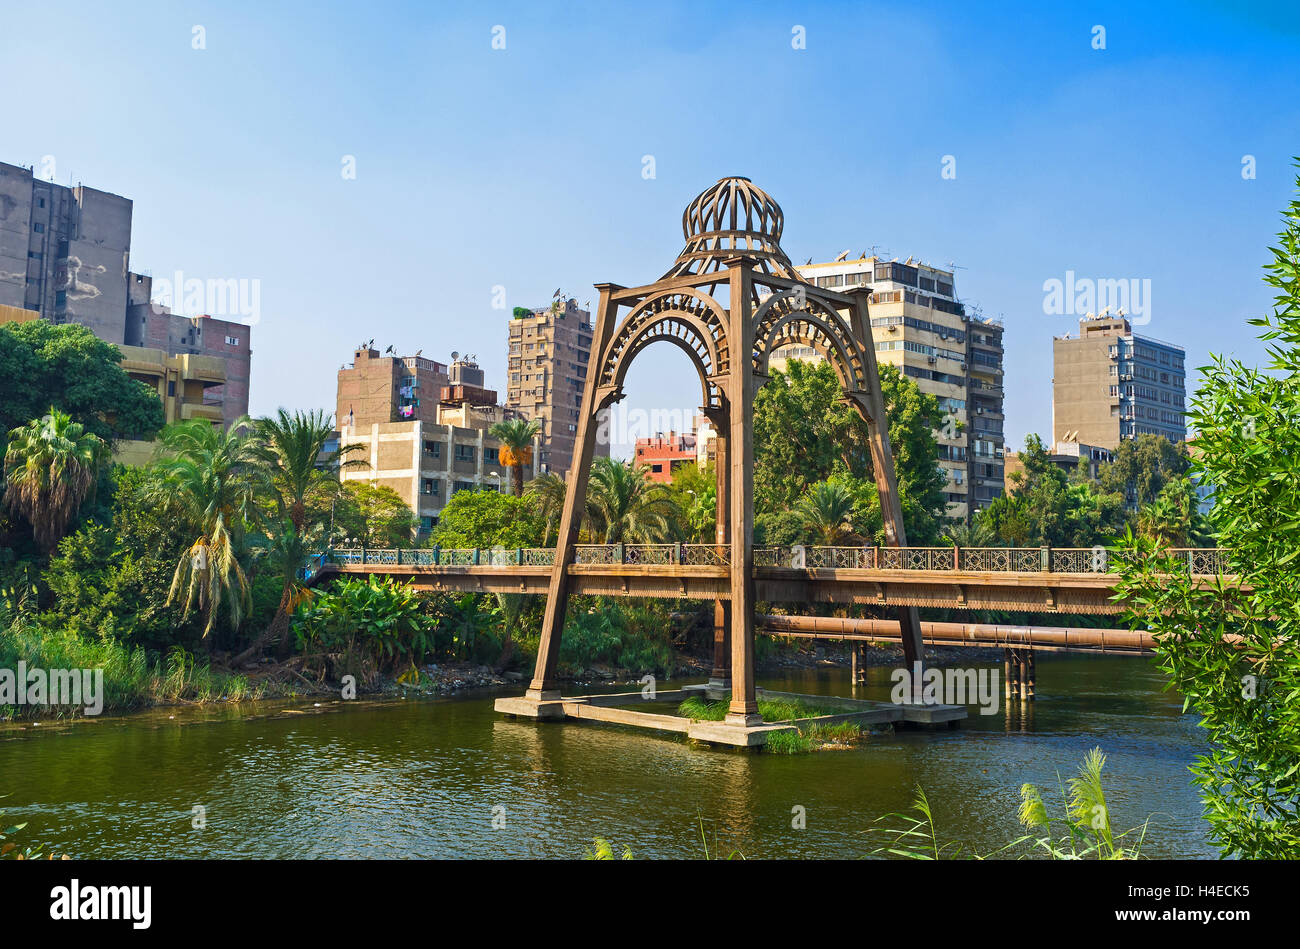 La passerelle en bois, relie les quartiers de El Roda Island avec la Corniche du Nil, Le Caire, Égypte. Banque D'Images